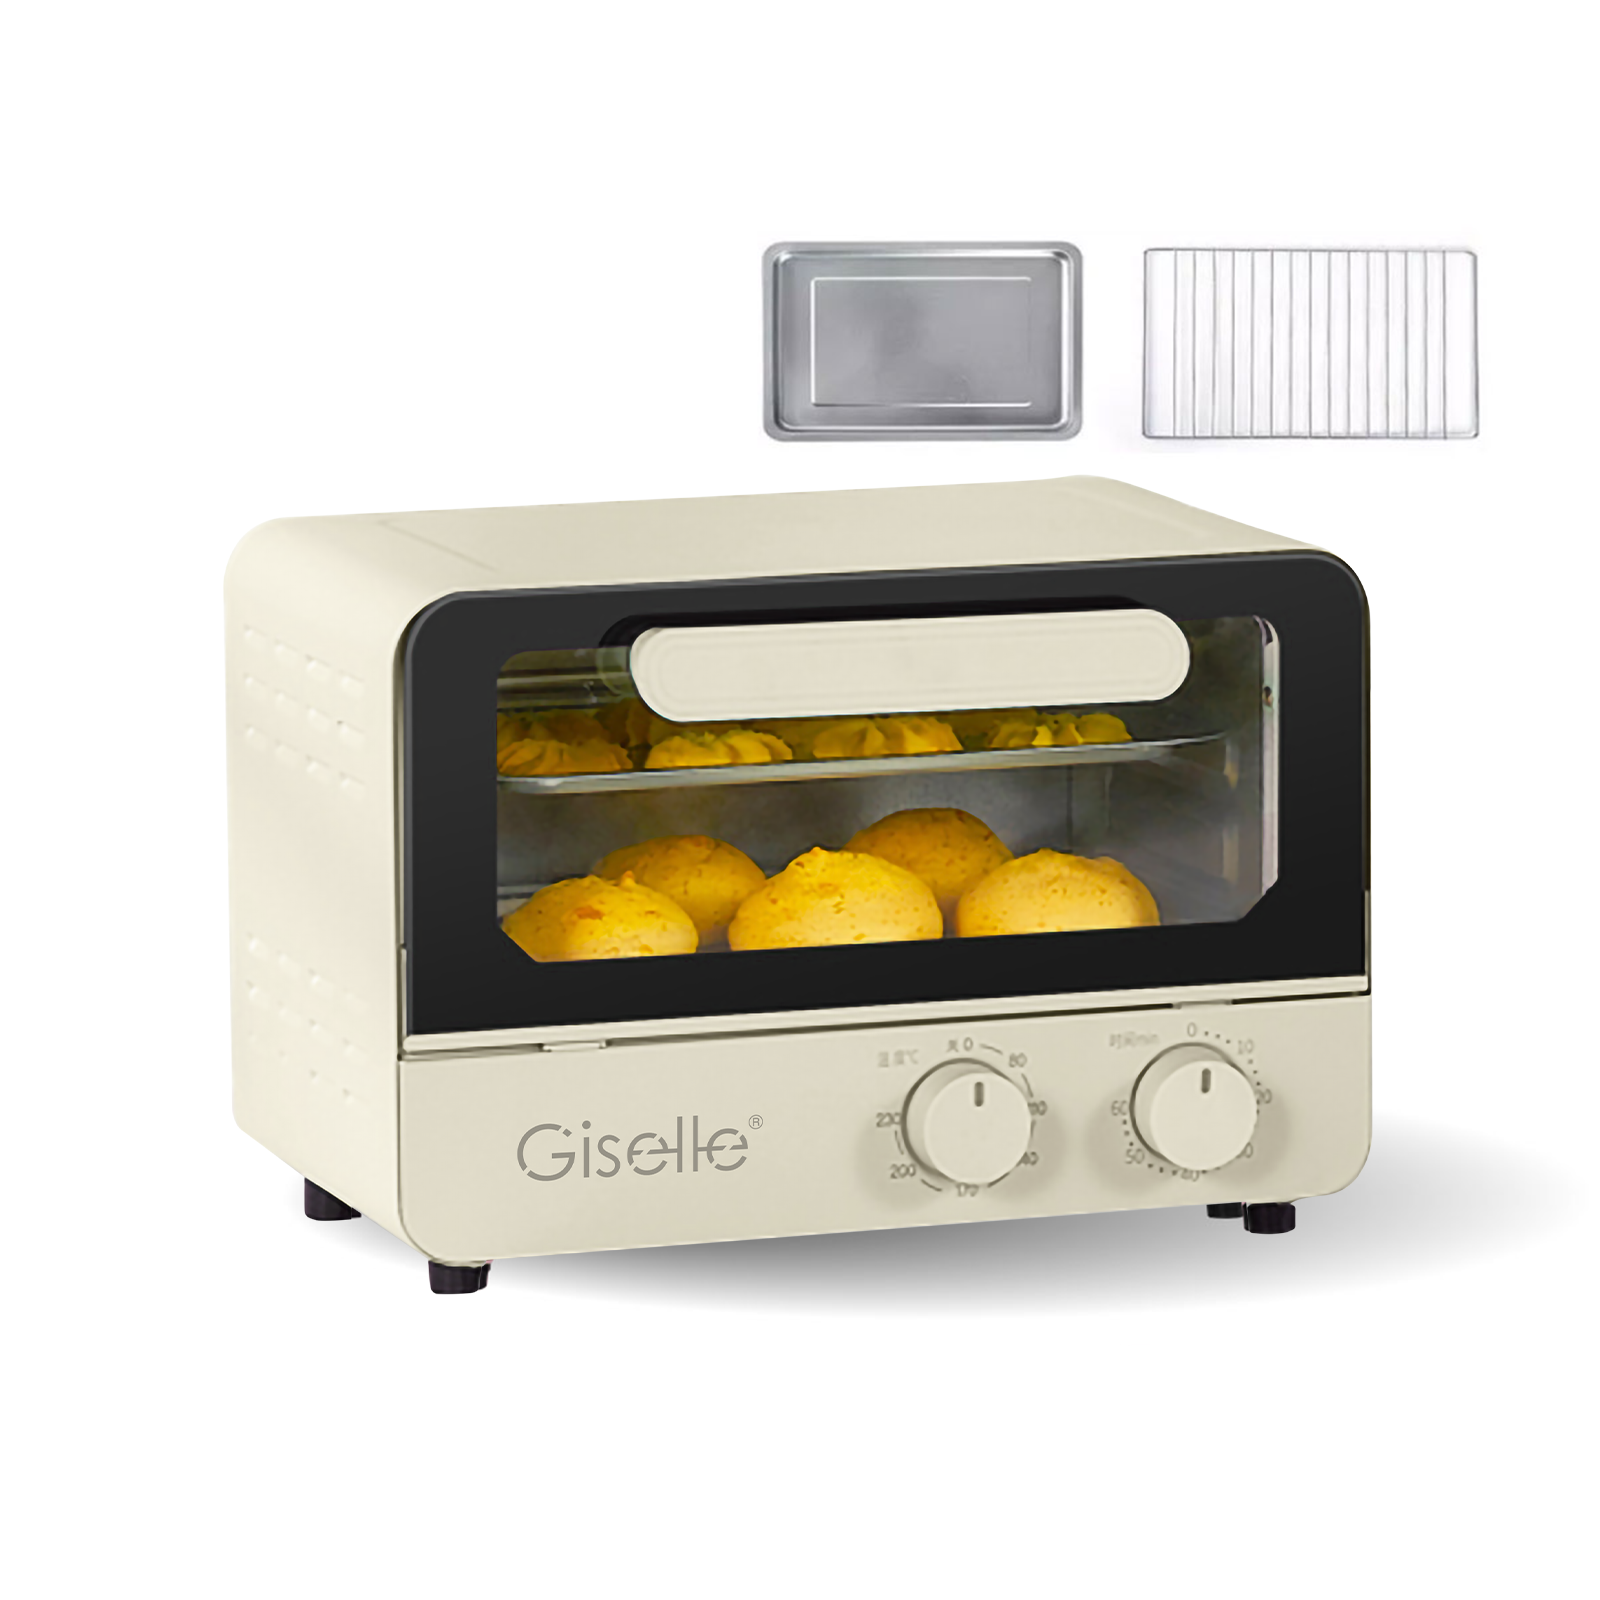 Giselle Electric Multifunction Oven Toast/Bake/Broil/Roast with Knob Adjustment (12L) KEA0344 网红小清新系列